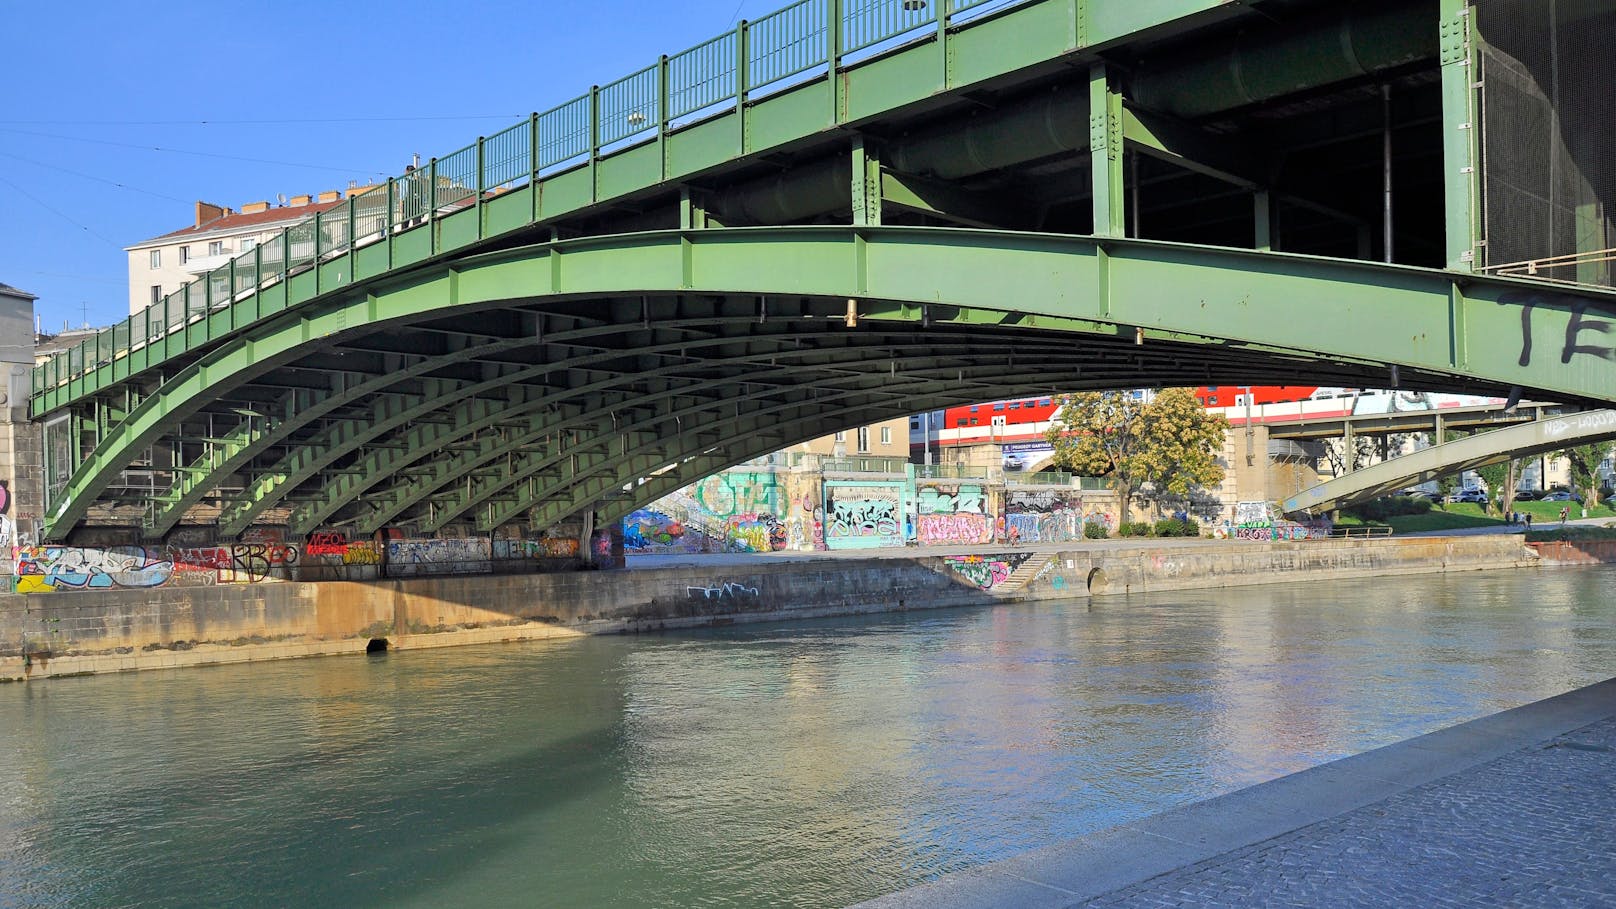 Donaukanal-Querung über die Franzensbrücke.